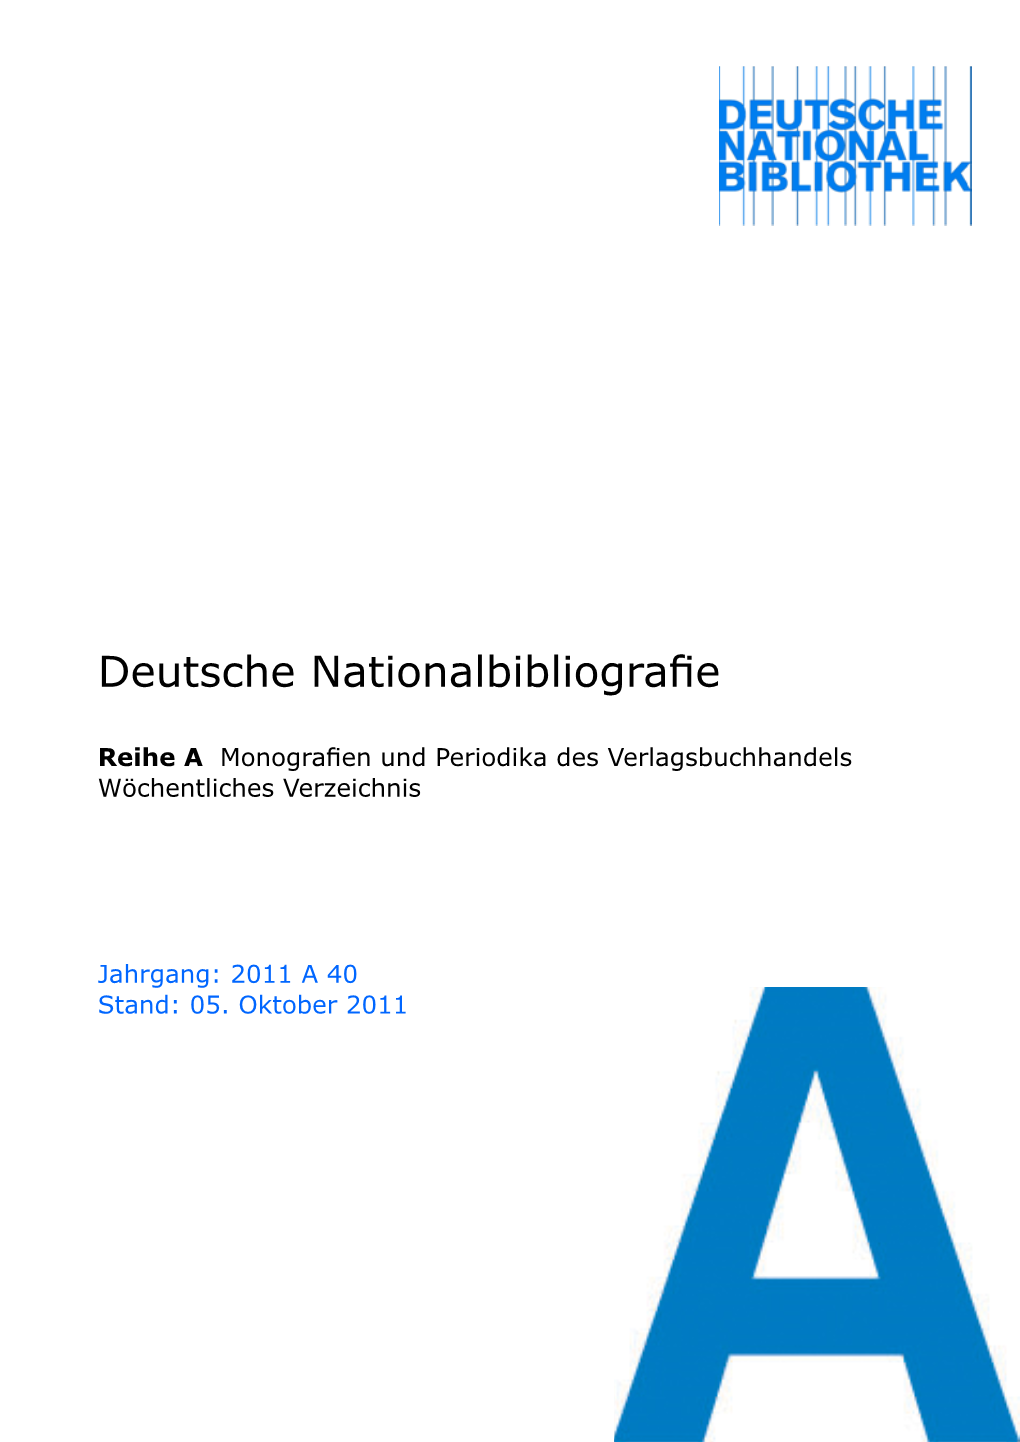 Deutsche Nationalbibliografie 2011 a 40